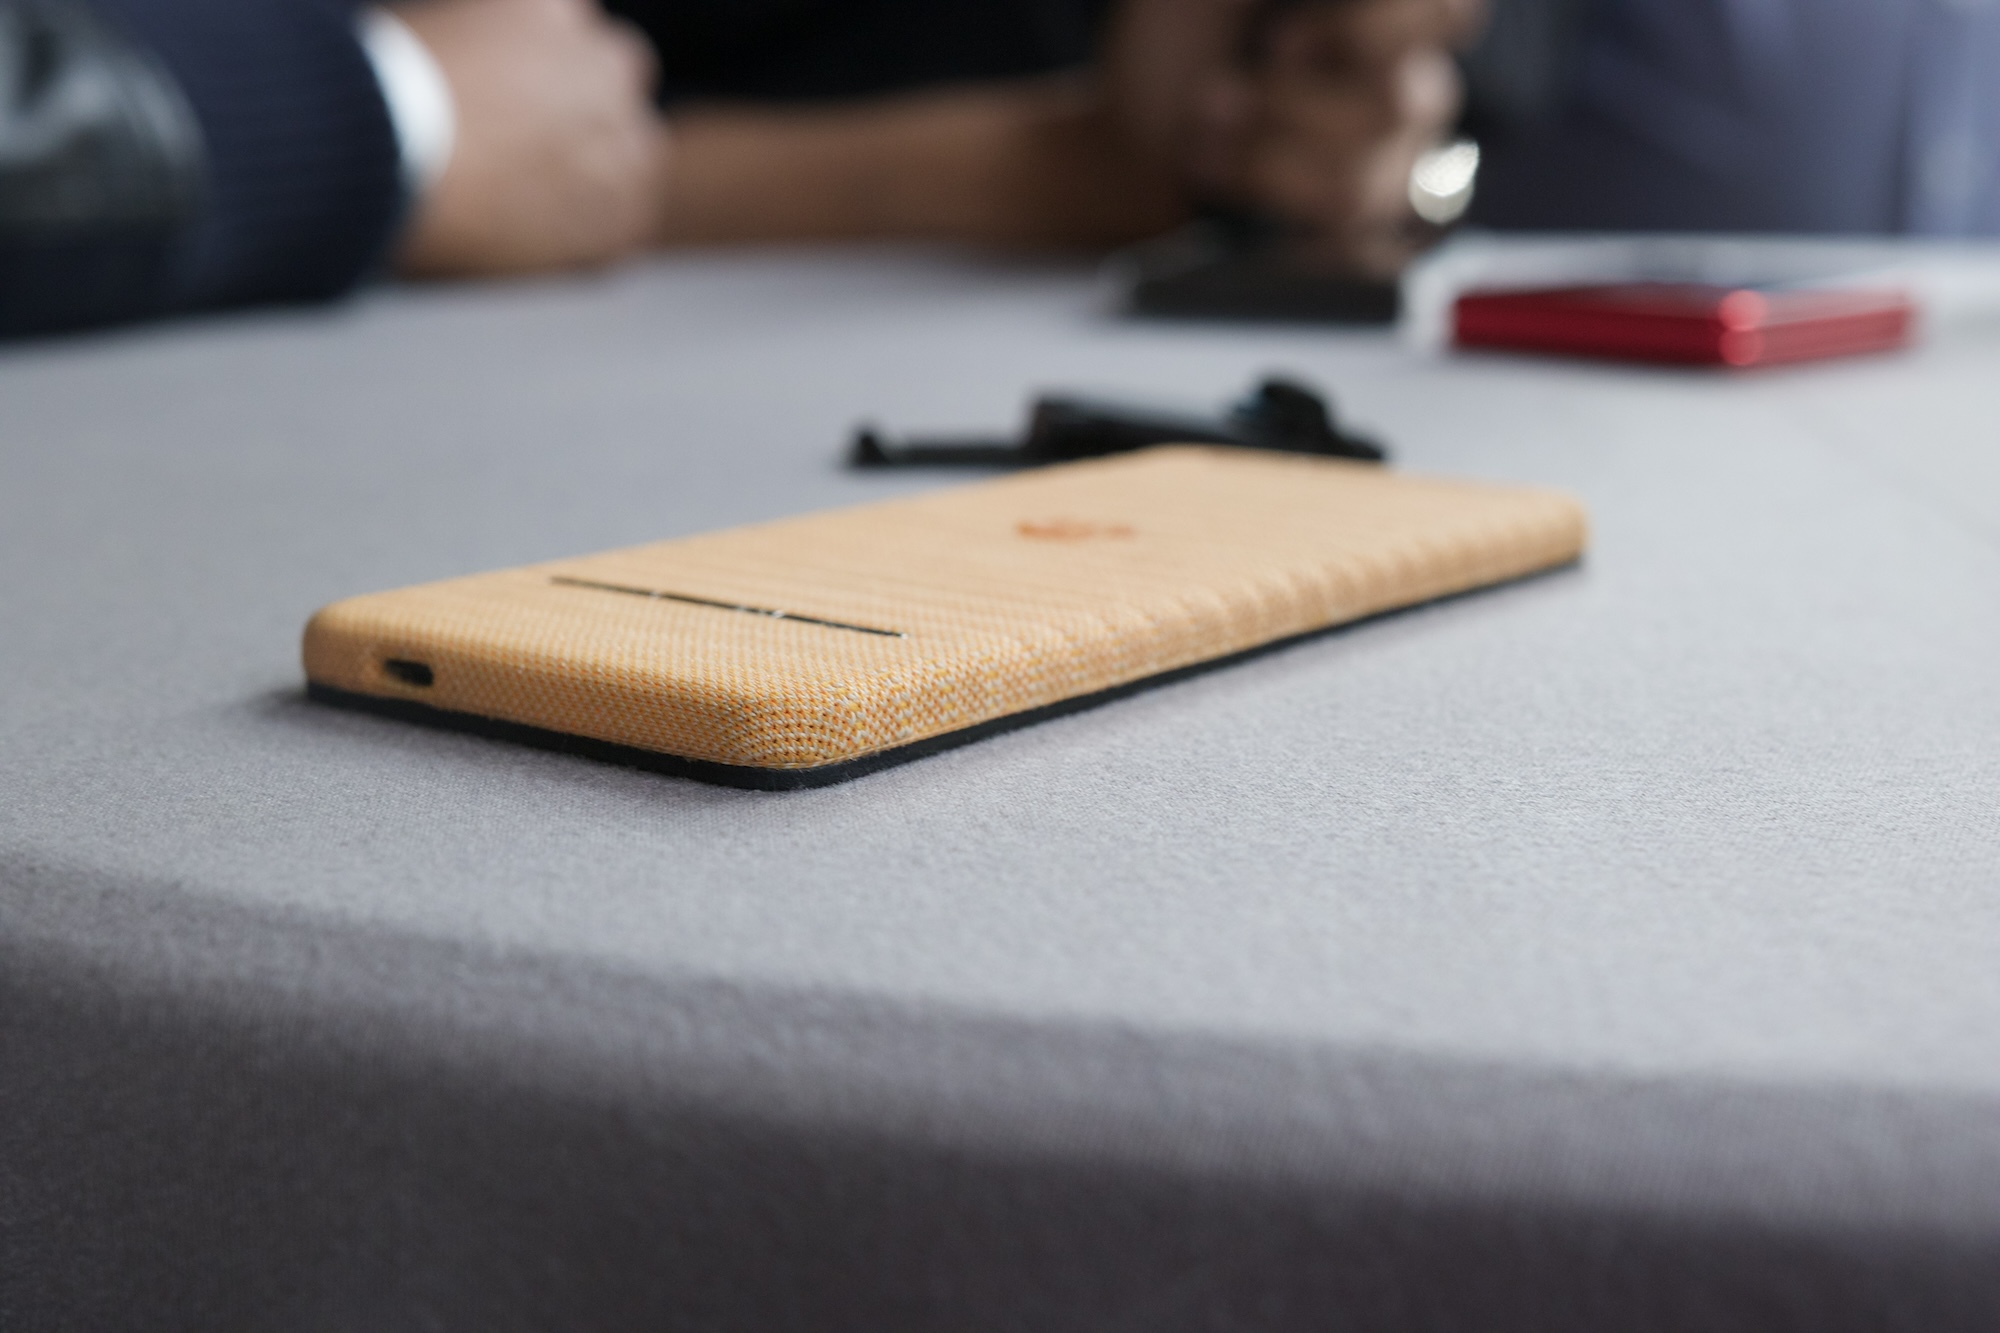 Telefono concettuale della Motorola posto sul tavolo con il display rivolto verso il basso.